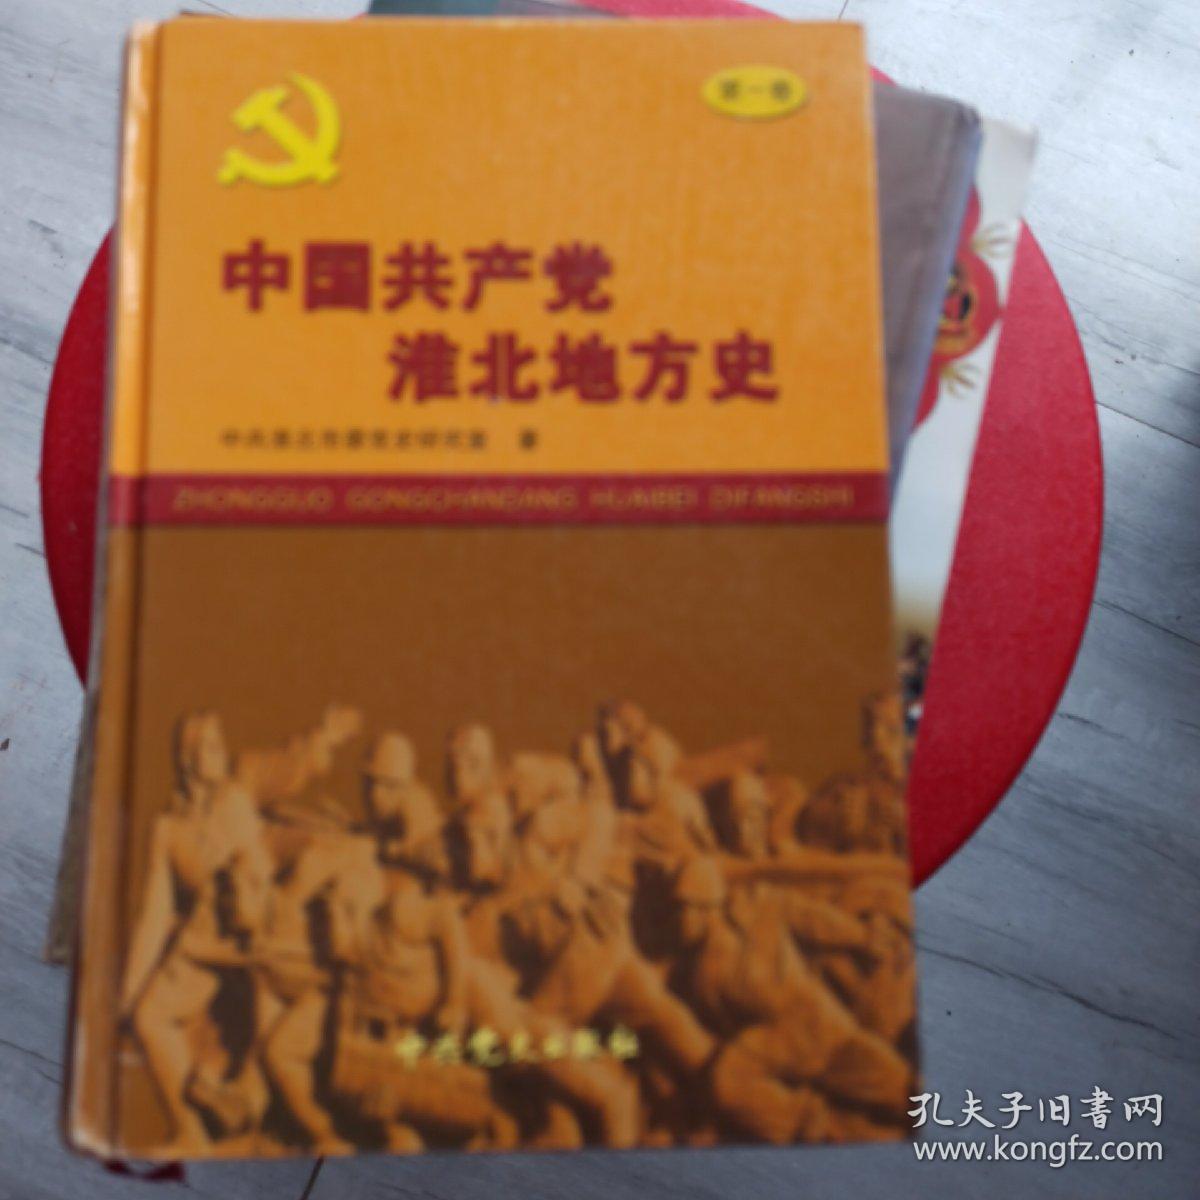 中国共产党淮北地方史